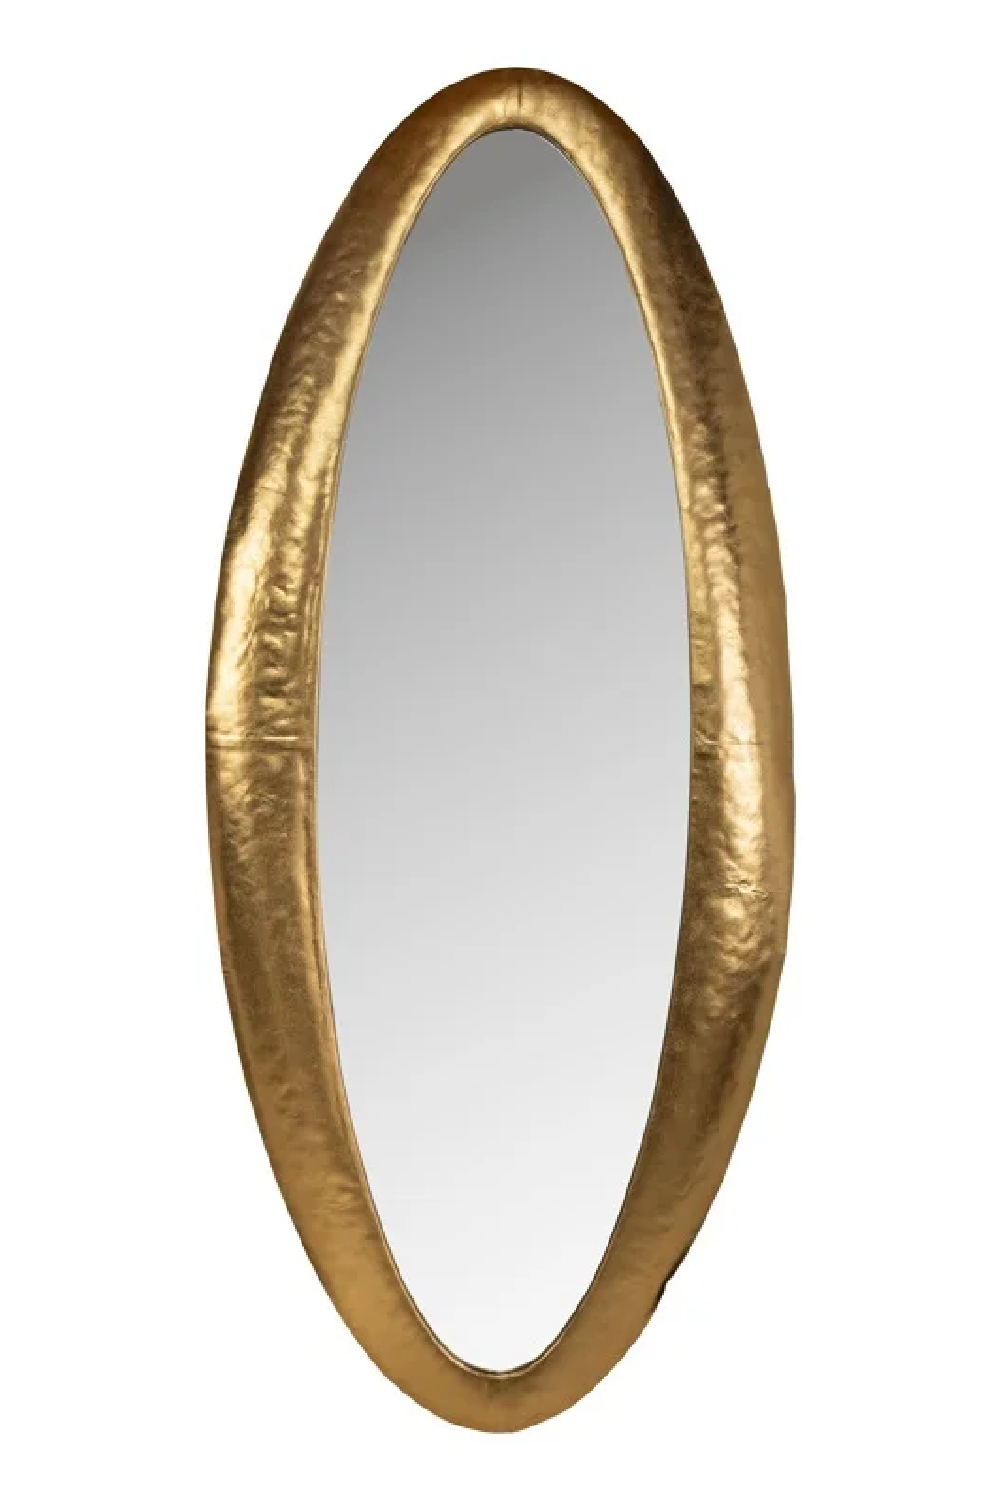 Gold Oval Mirror | OROA Belia | Oroa.com